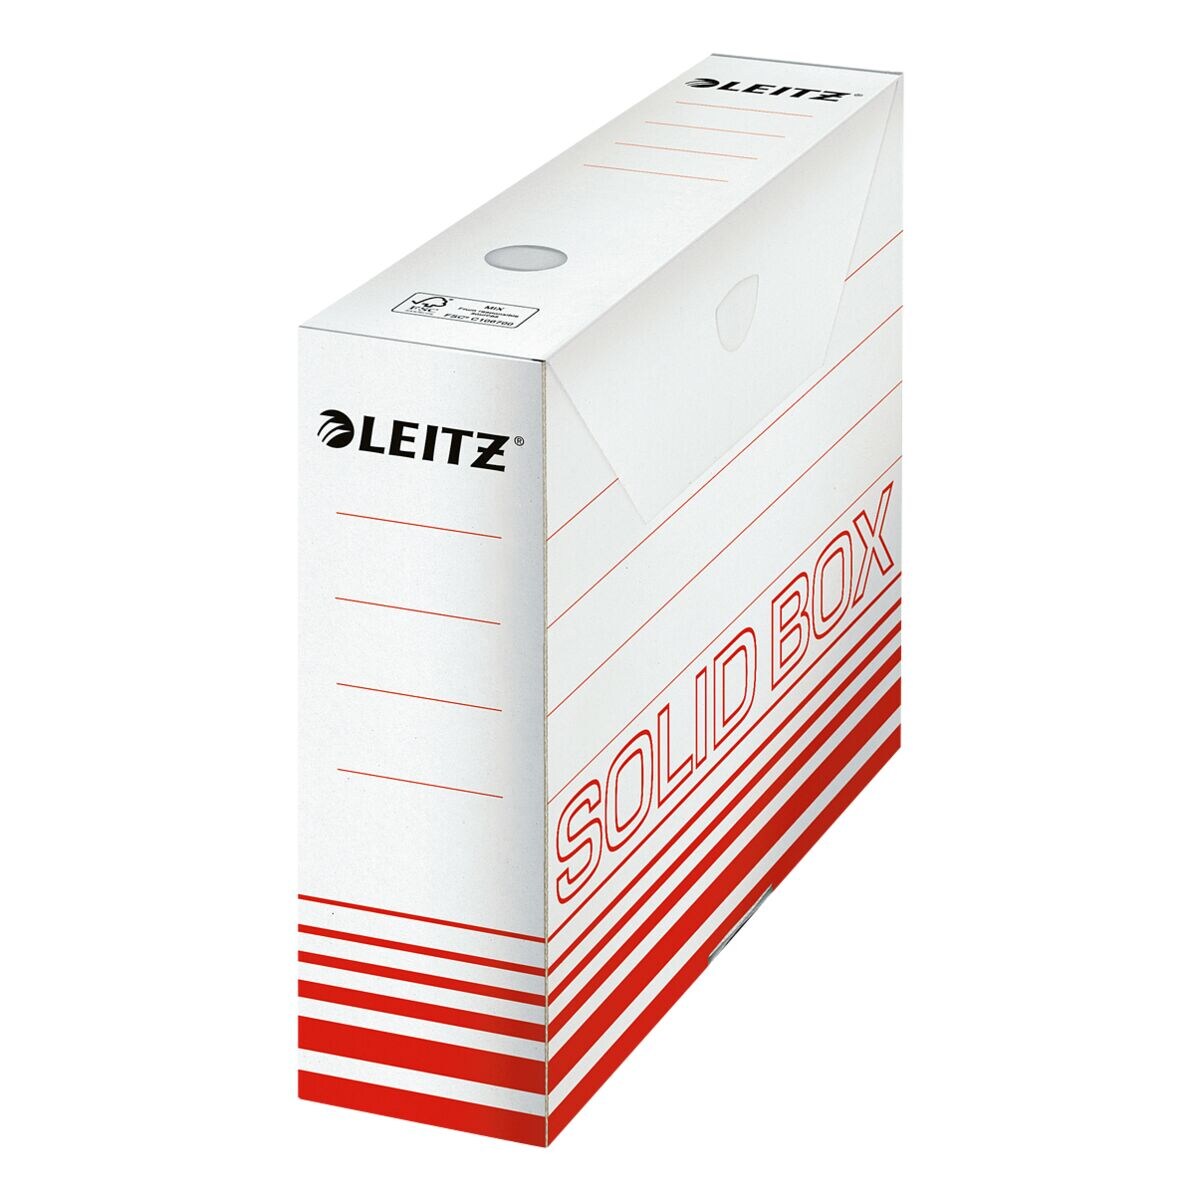 Leitz Archivschachtel 80 mm Solid Box 6127 - 10 Stck